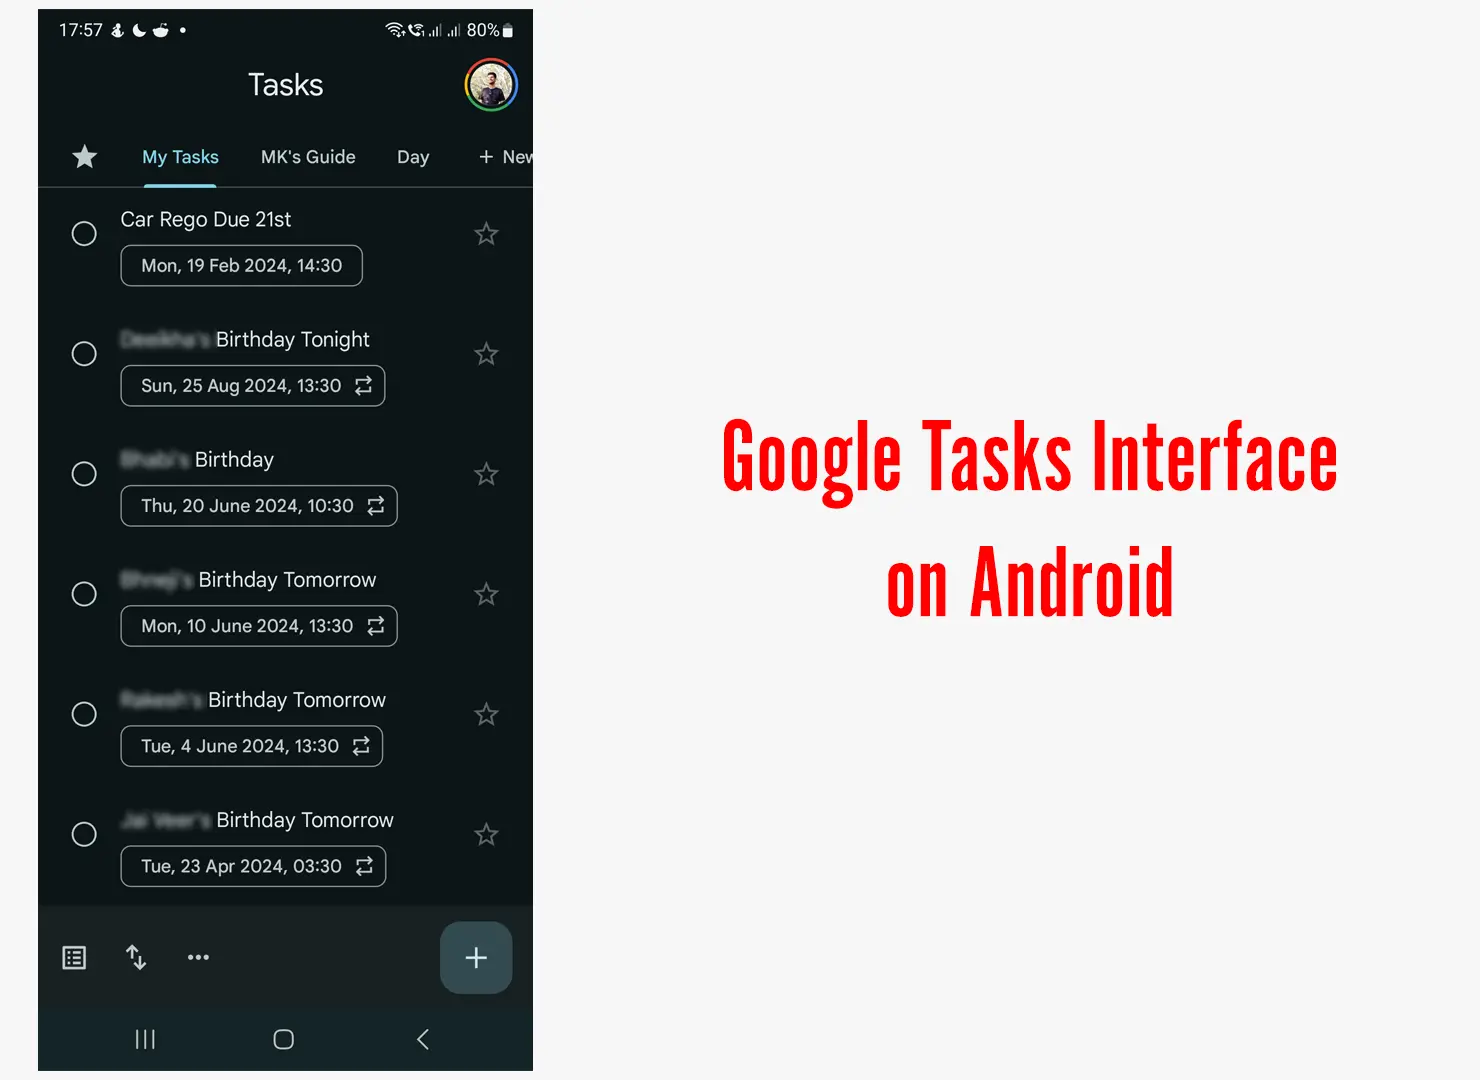 Google Tasks Interface on Android